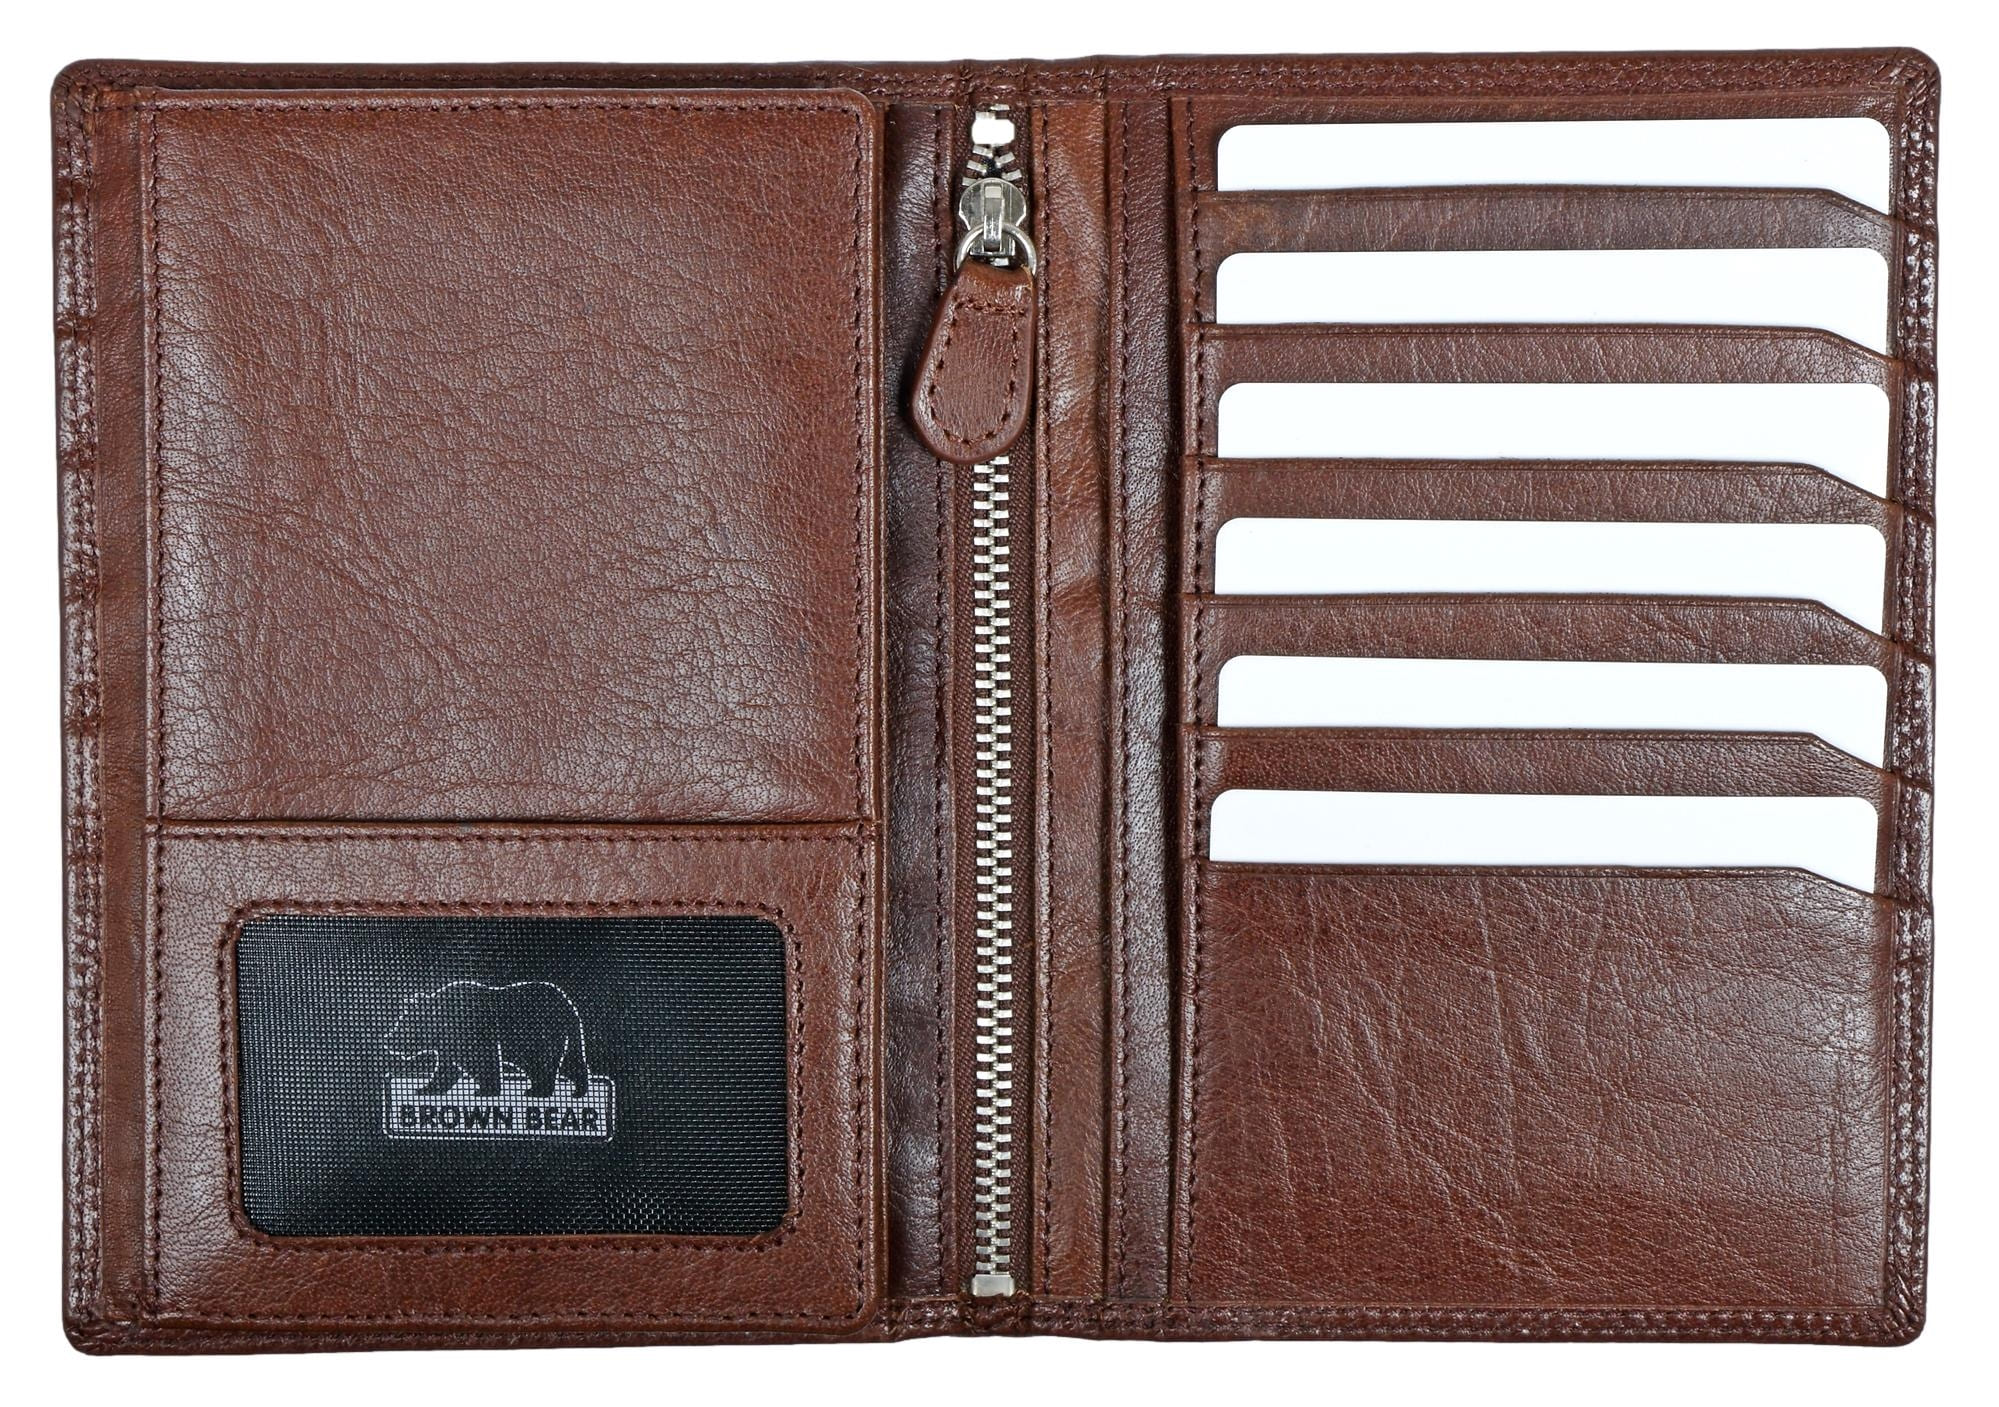 Brown Bear Classic 8013 - Brieftasche mit 13 Kartenfächern Braun Toscana